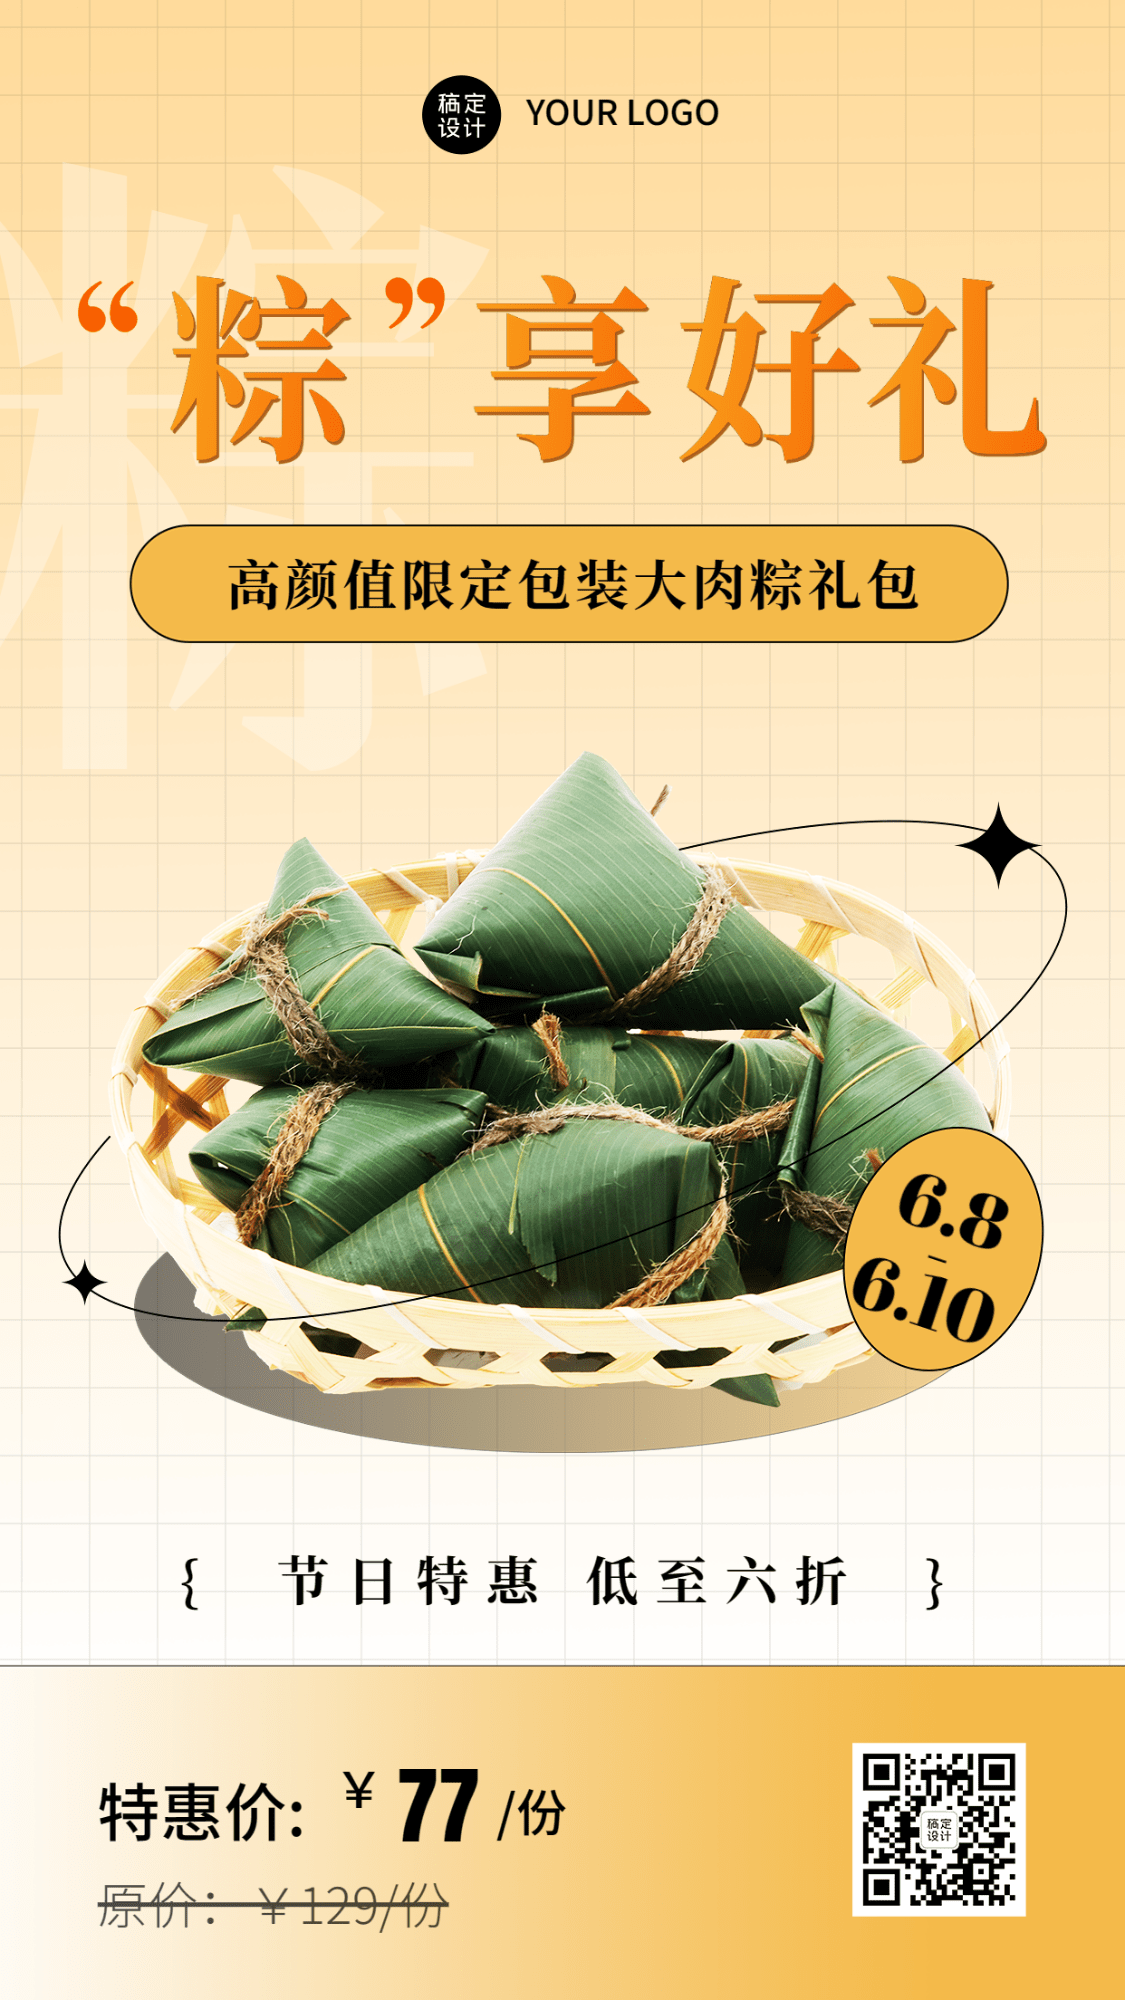 端午节餐饮粽子产品营销手机海报预览效果